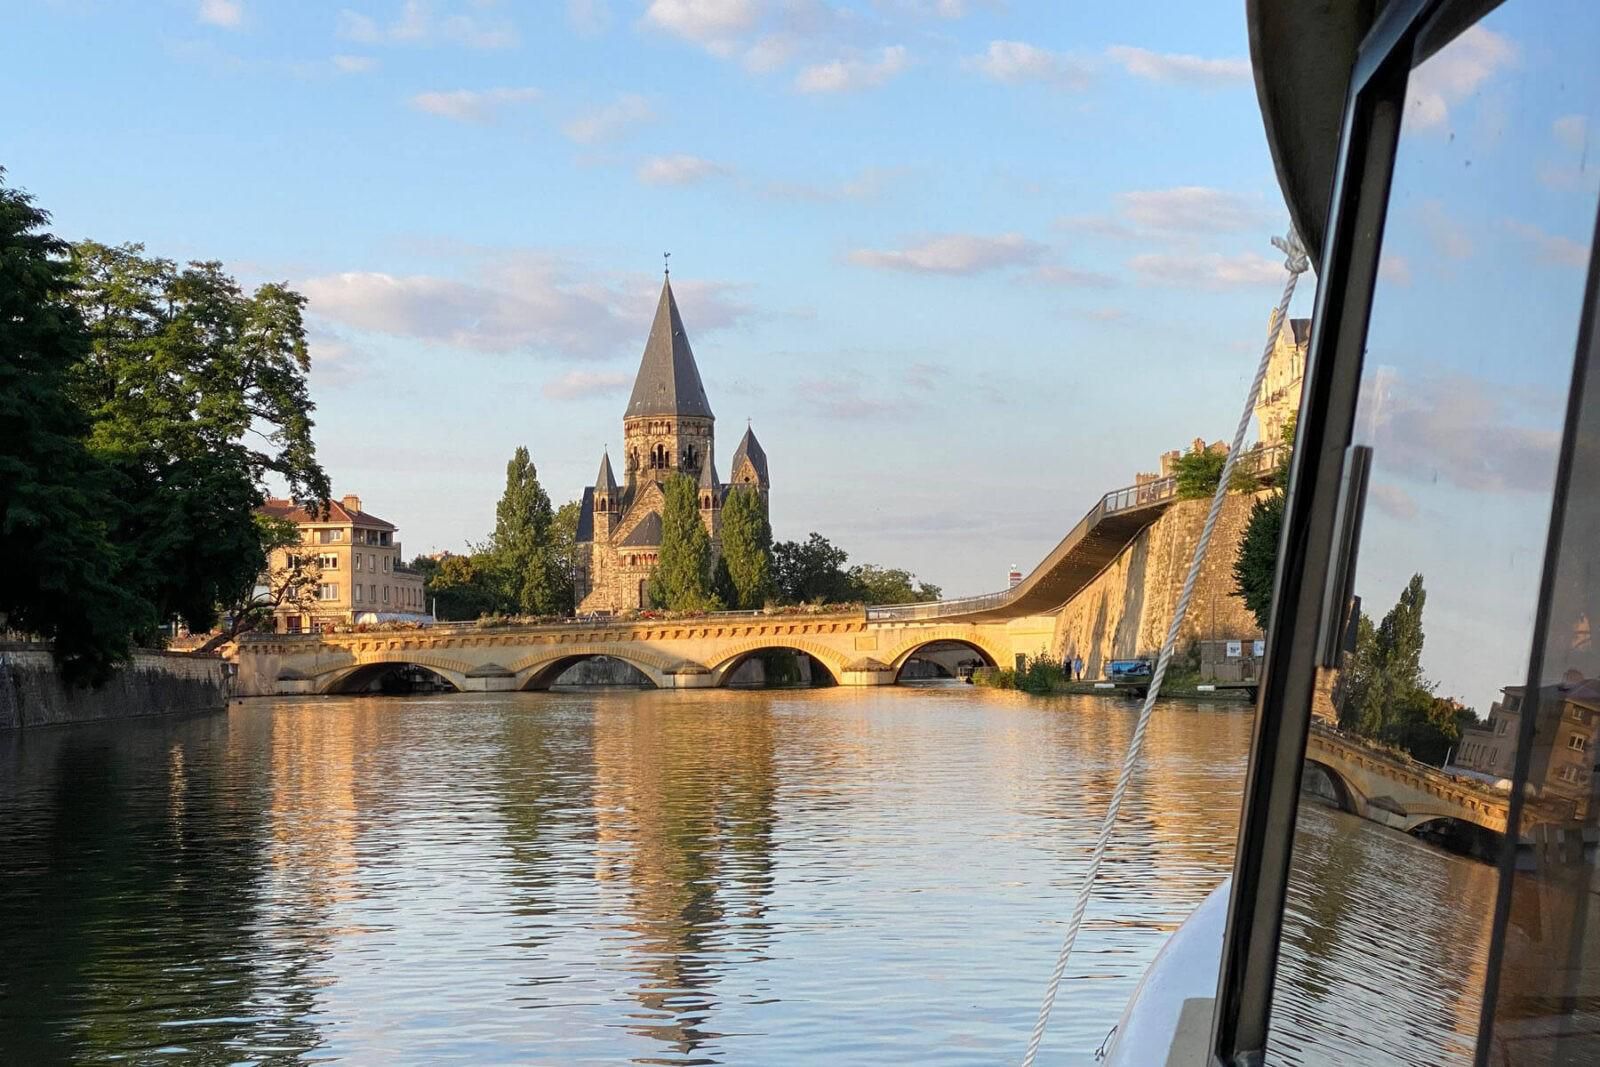 Frankreich: Städtetrip nach Metz mit viel Kultur